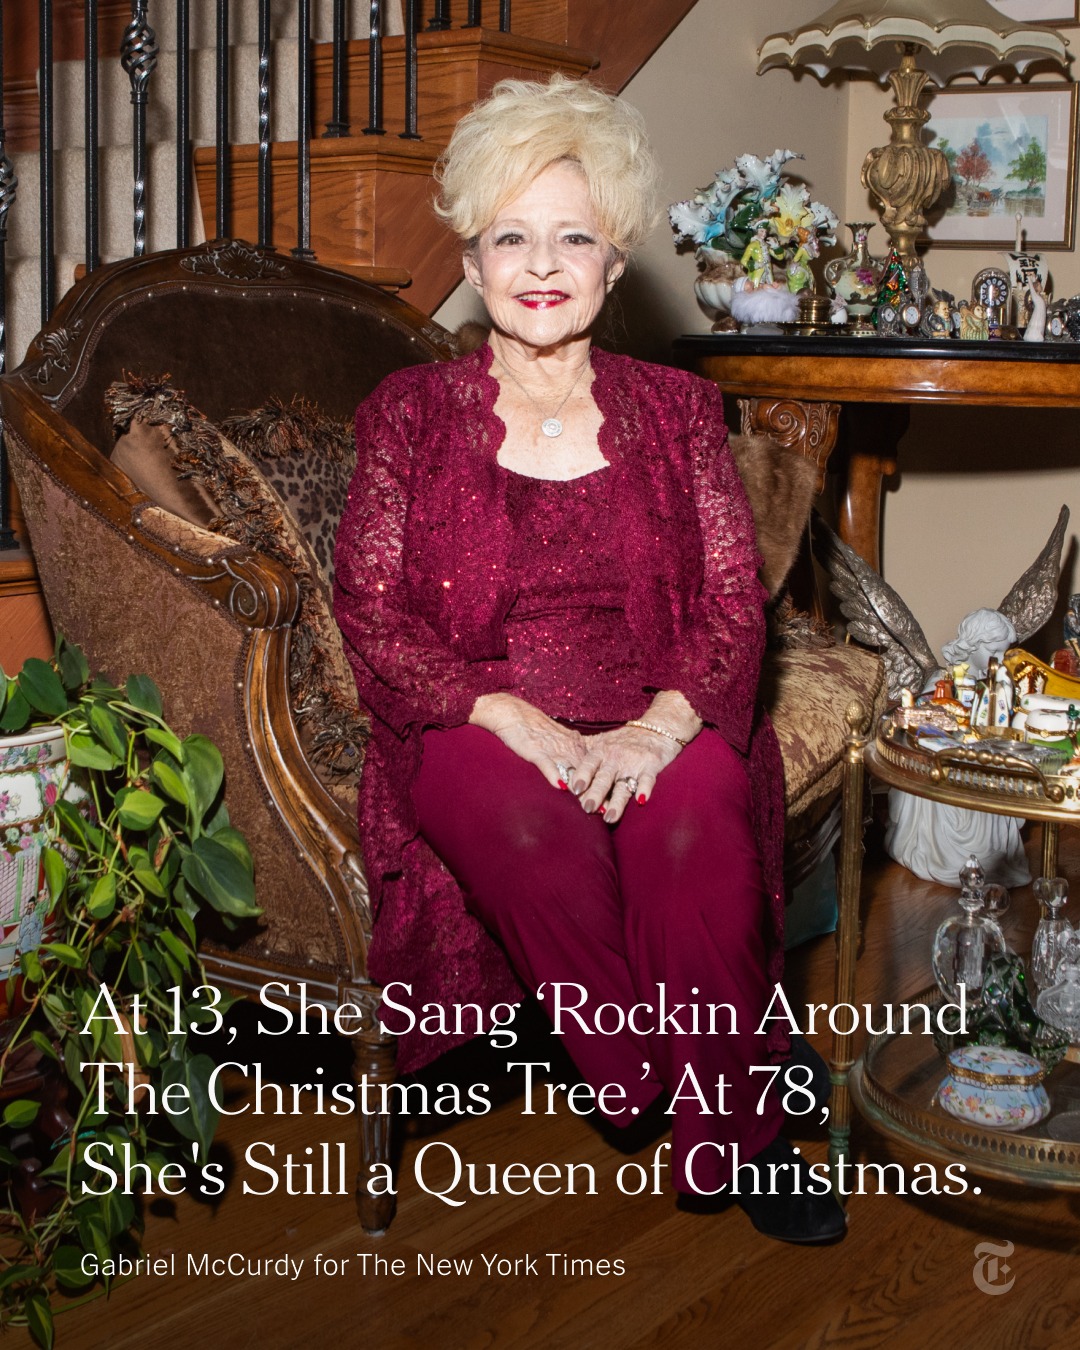 Brenda Lee on 'Rockin' Around the Christmas Tree' Reaching No. 1